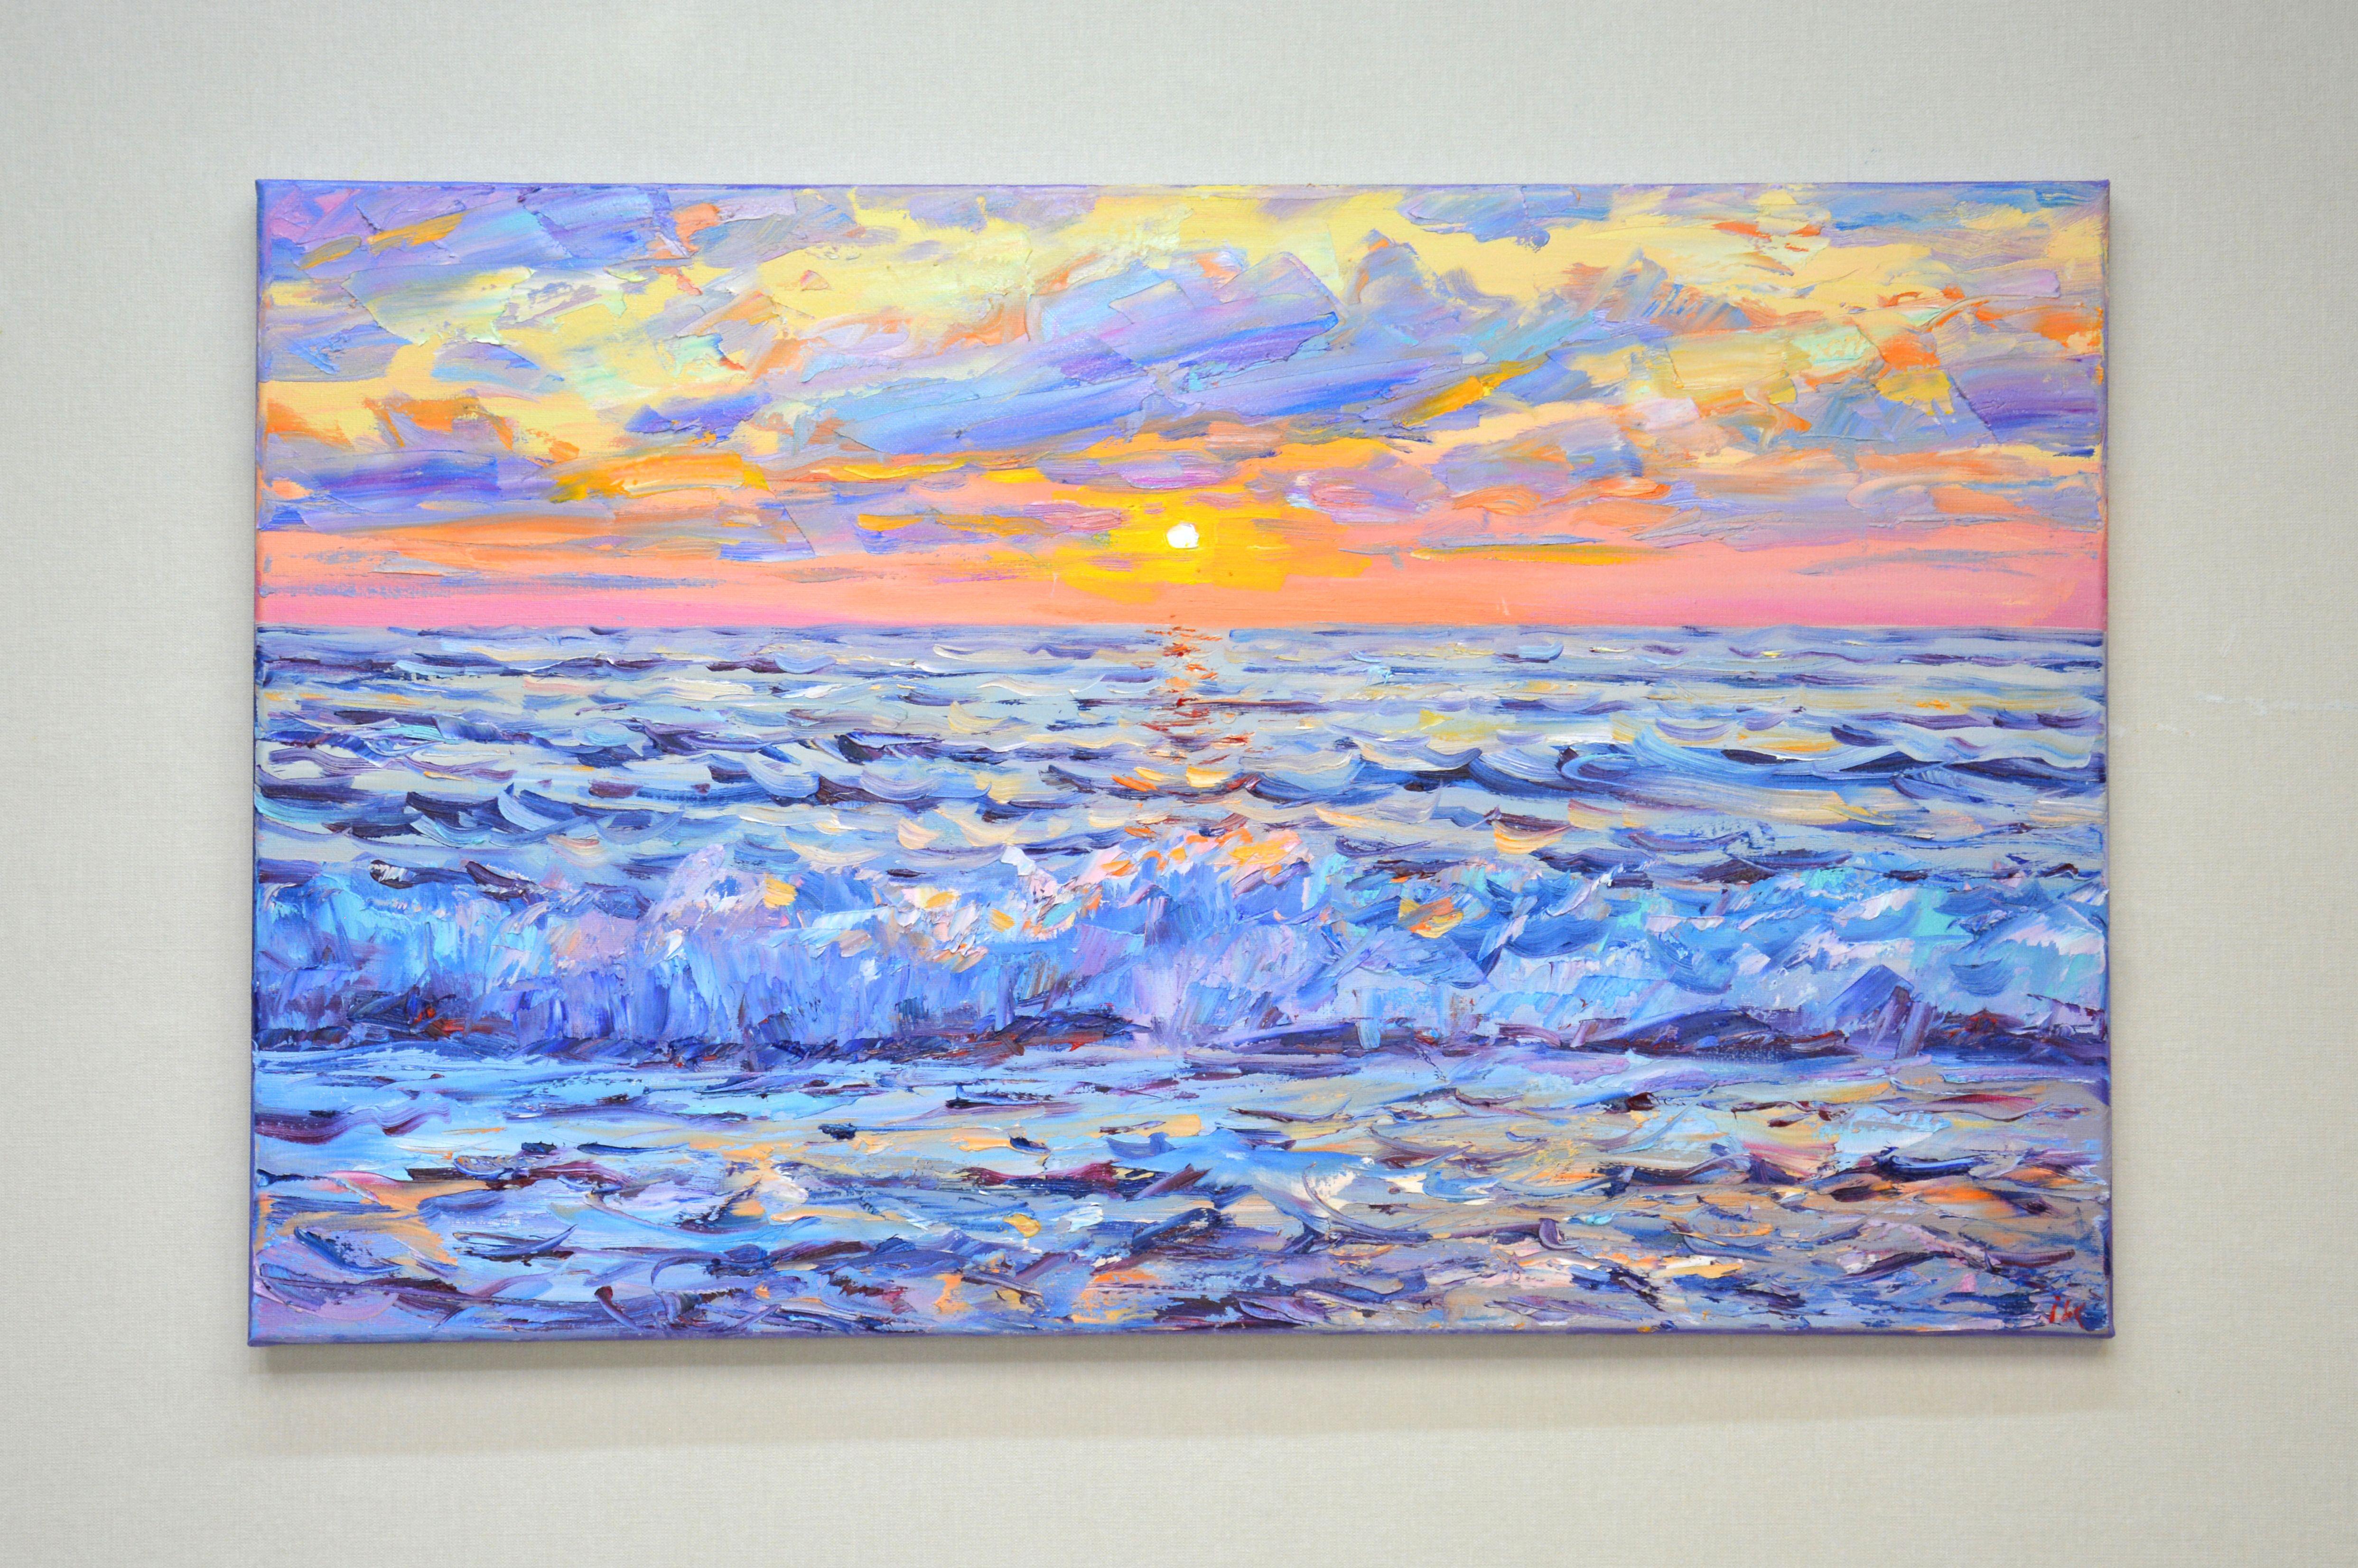 Rosa Sonnenuntergang auf dem Meer, Gemälde, Öl auf Leinwand (Impressionismus), Painting, von Iryna Kastsova